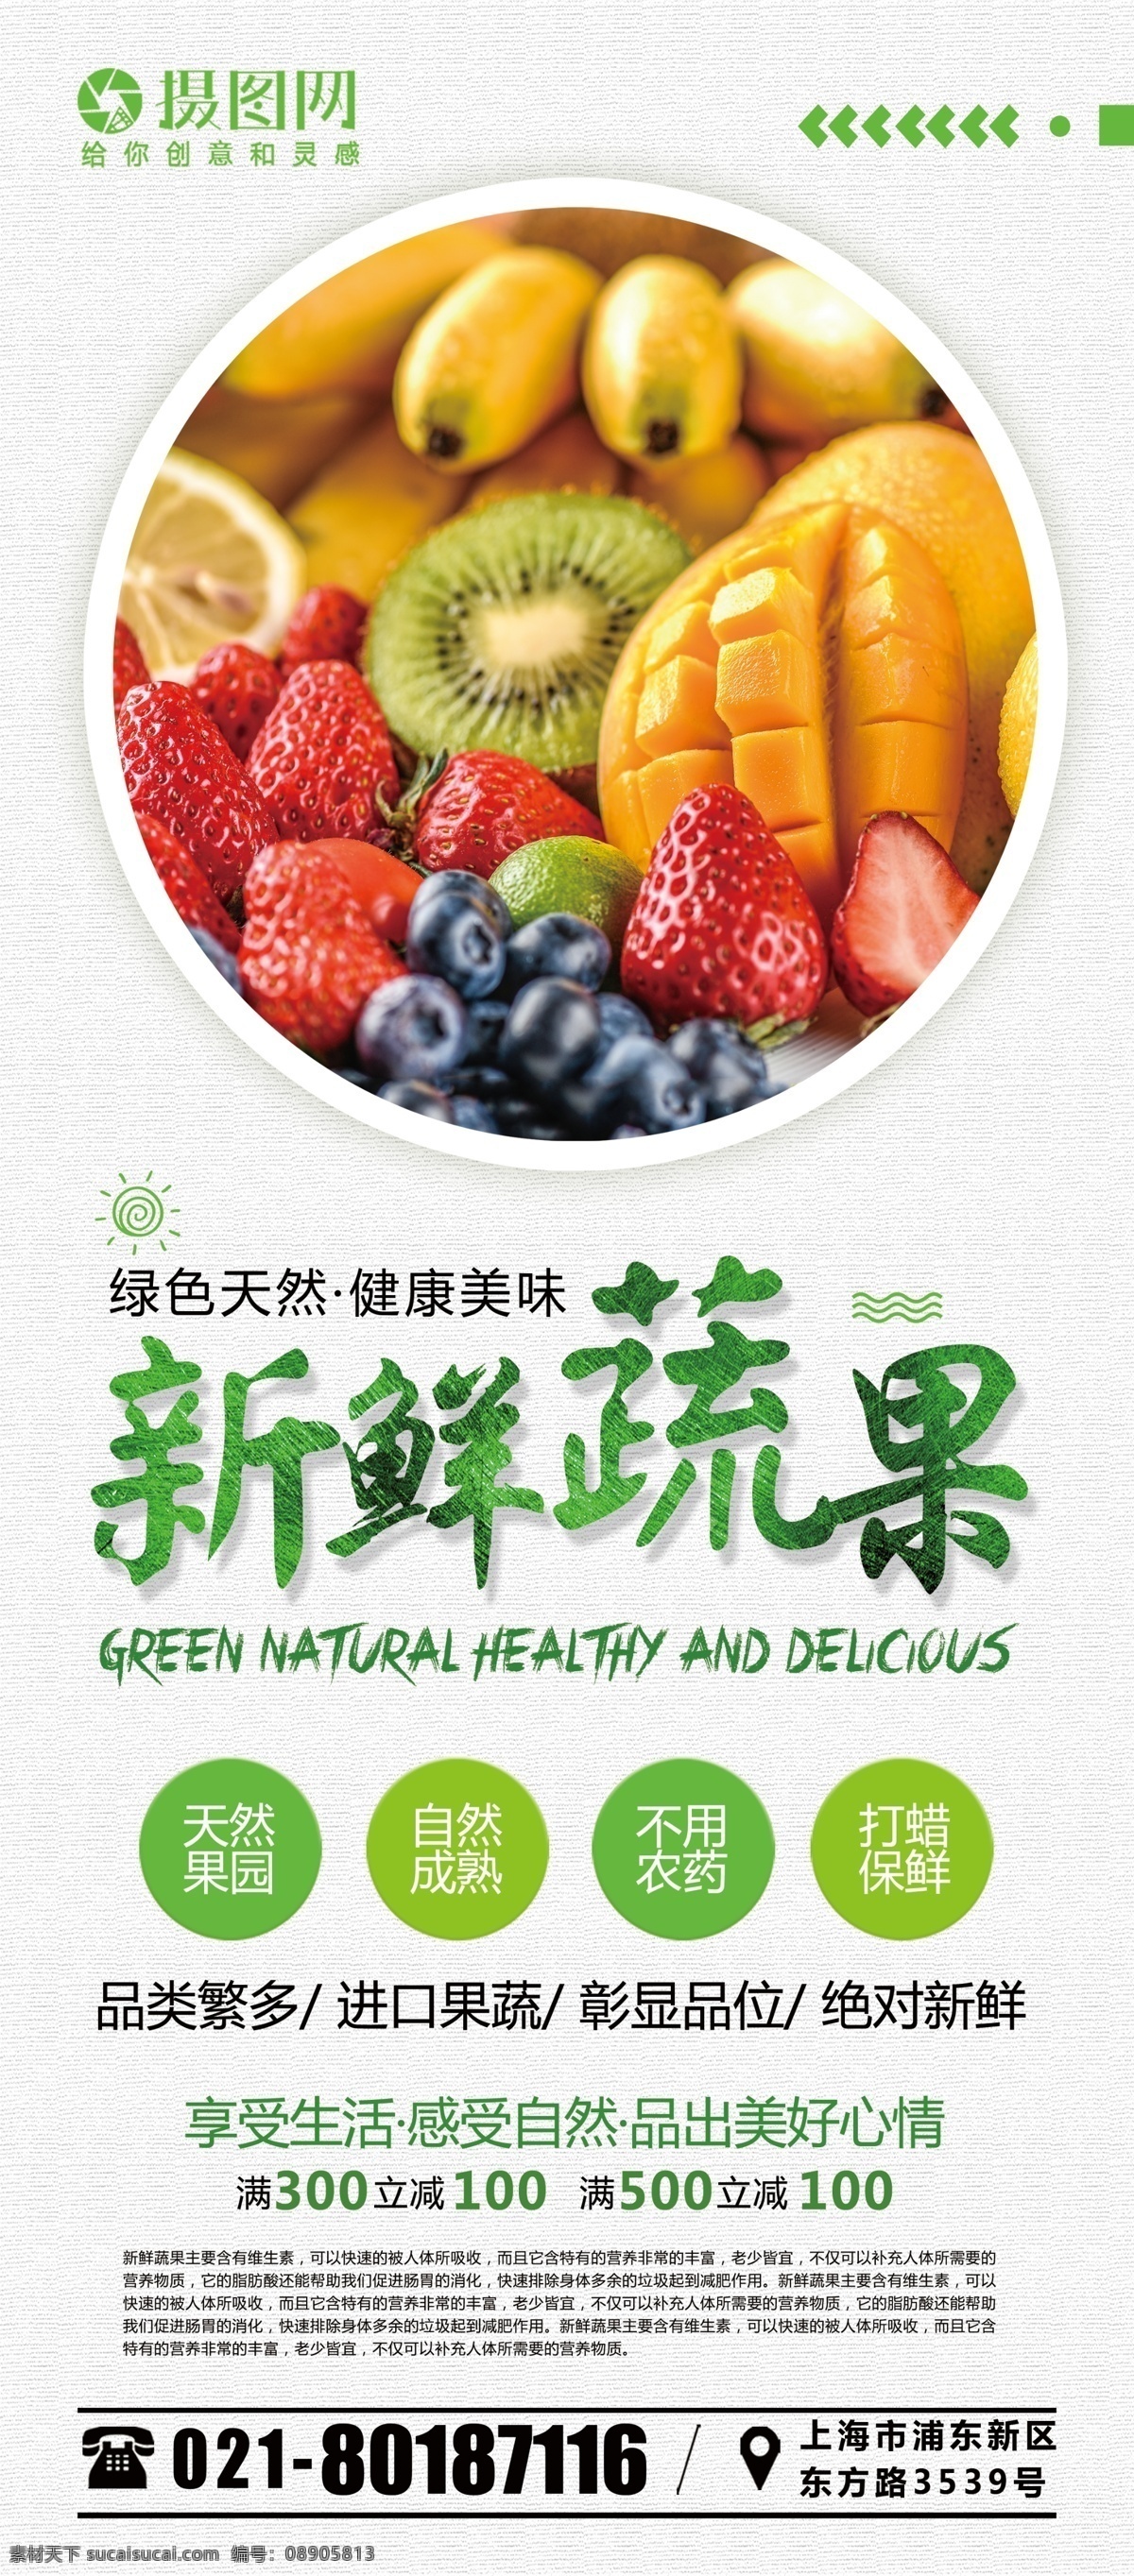 简约 中国 风 新鲜 蔬果 水果 生鲜 宣传 促销 x 展架 易拉宝 中国风 新鲜蔬果 展架设计